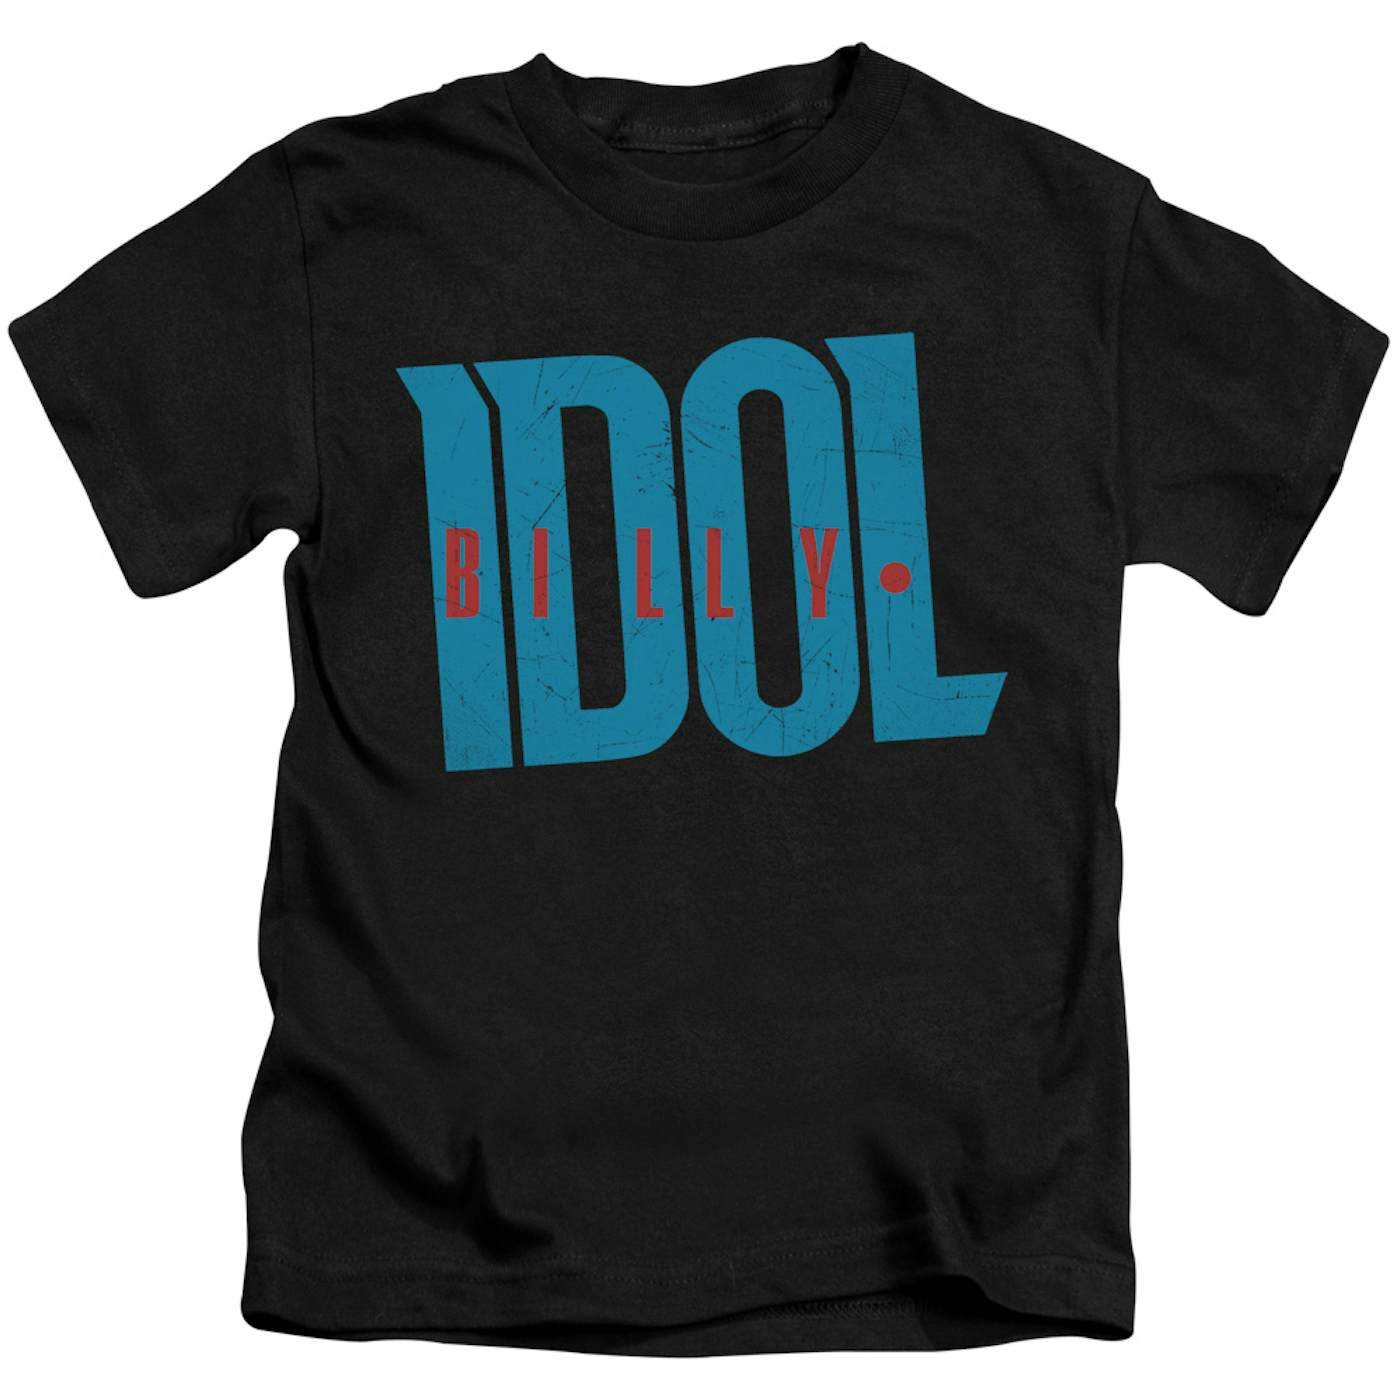 Billy Idol Kids T Shirt | LOGO Kids Tee